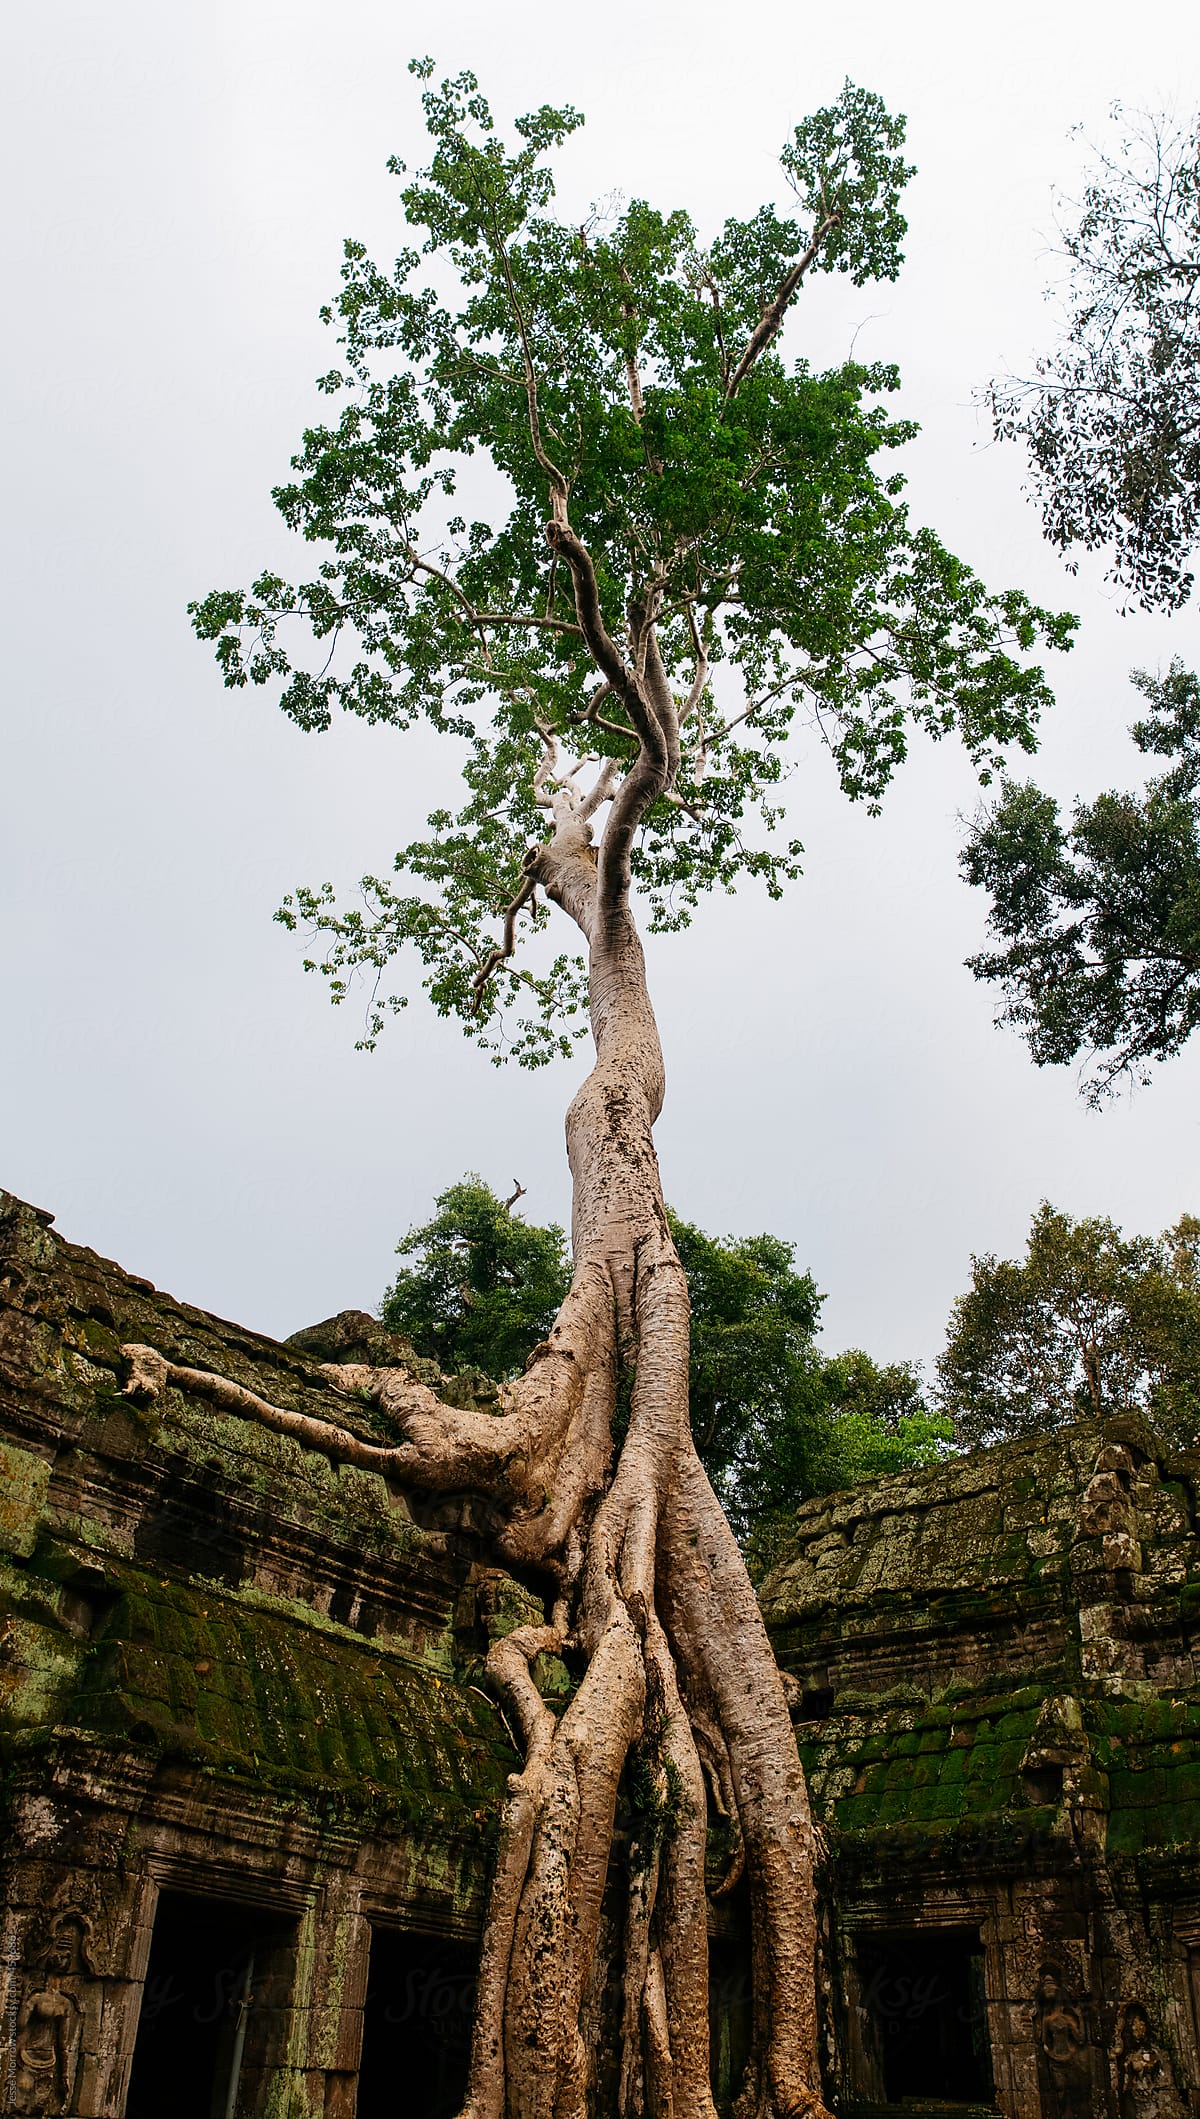 Overgrown tree hangs on side of temple